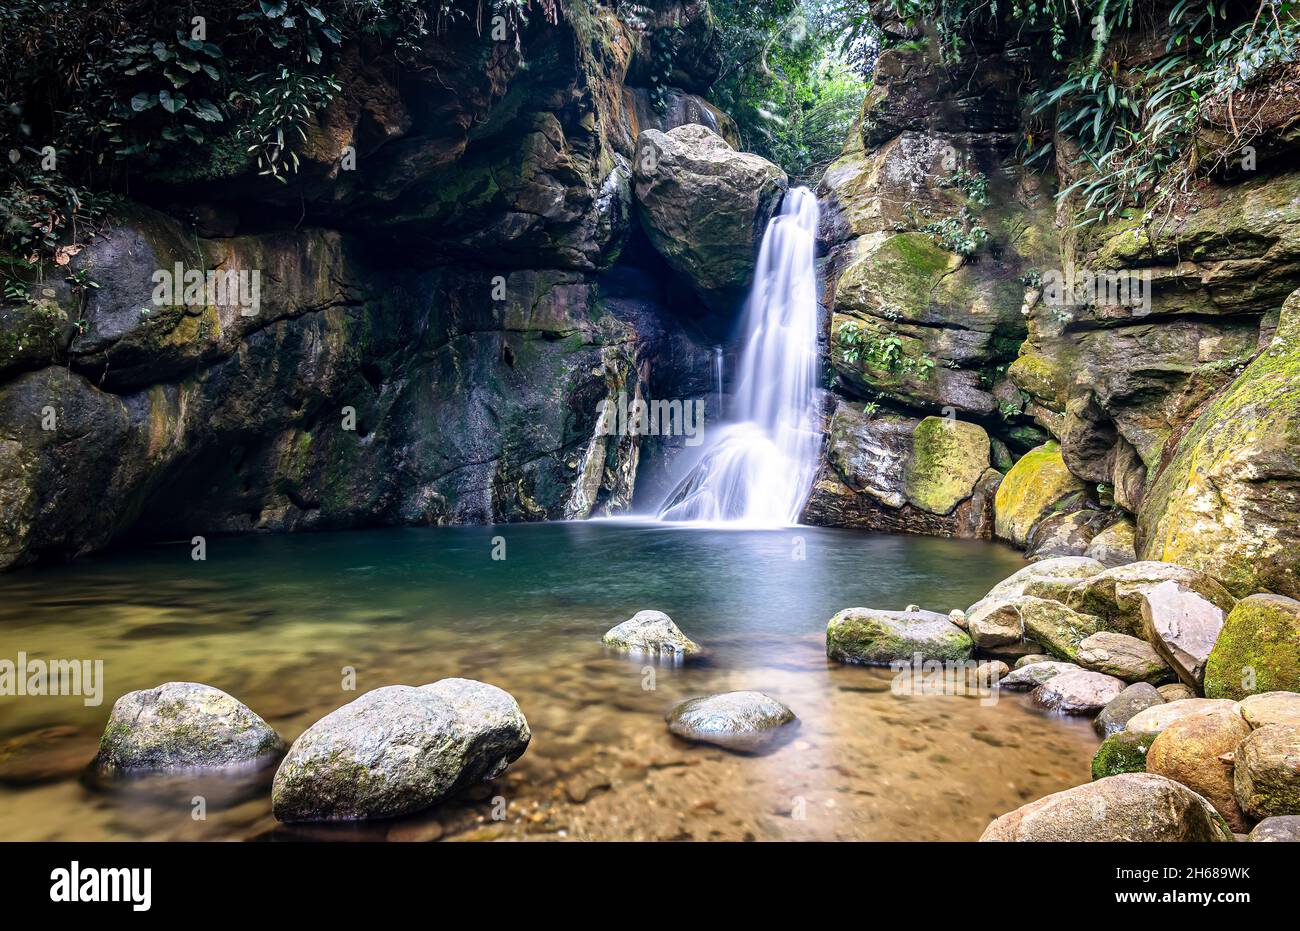 Schöner Wasserfall mit klarem Wasser, der zwischen Felsformationen und grüner Vegetation fließt und die Serra do Mar verschönert Stockfoto